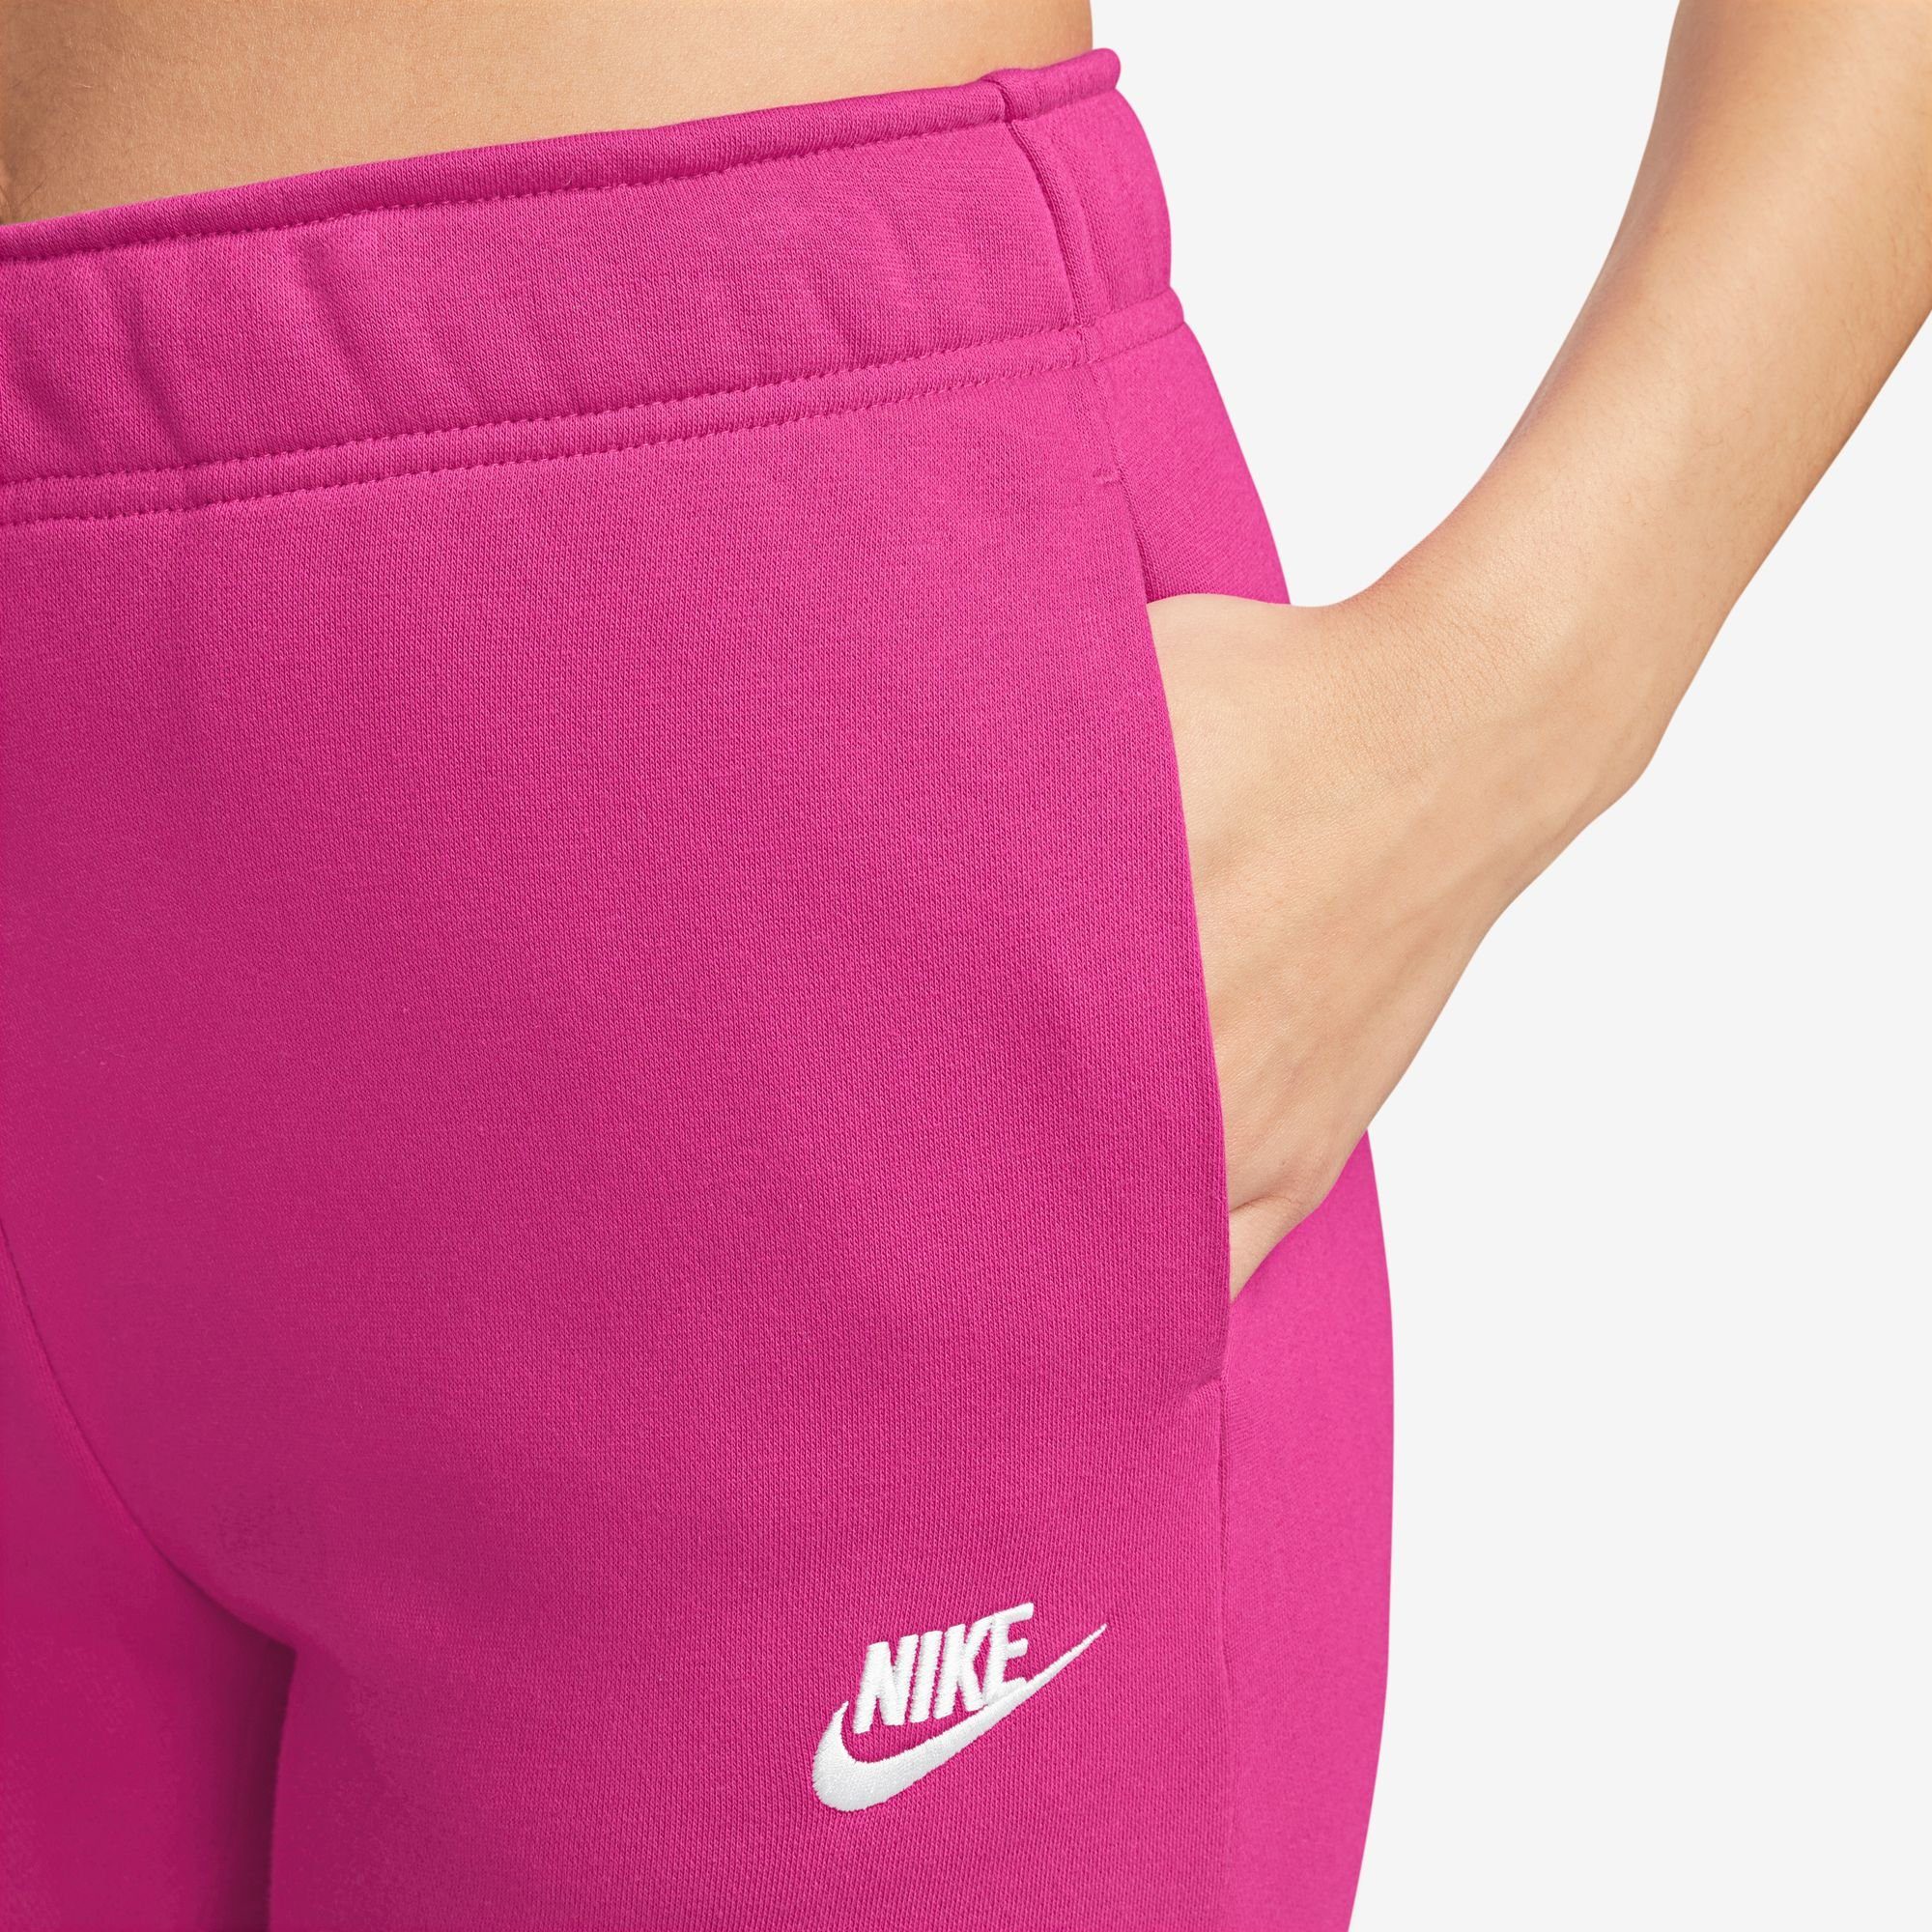 WOMEN'S Jogginghose FIREBERRY/WHITE Sportswear JOGGERS MID-RISE CLUB FLEECE Nike